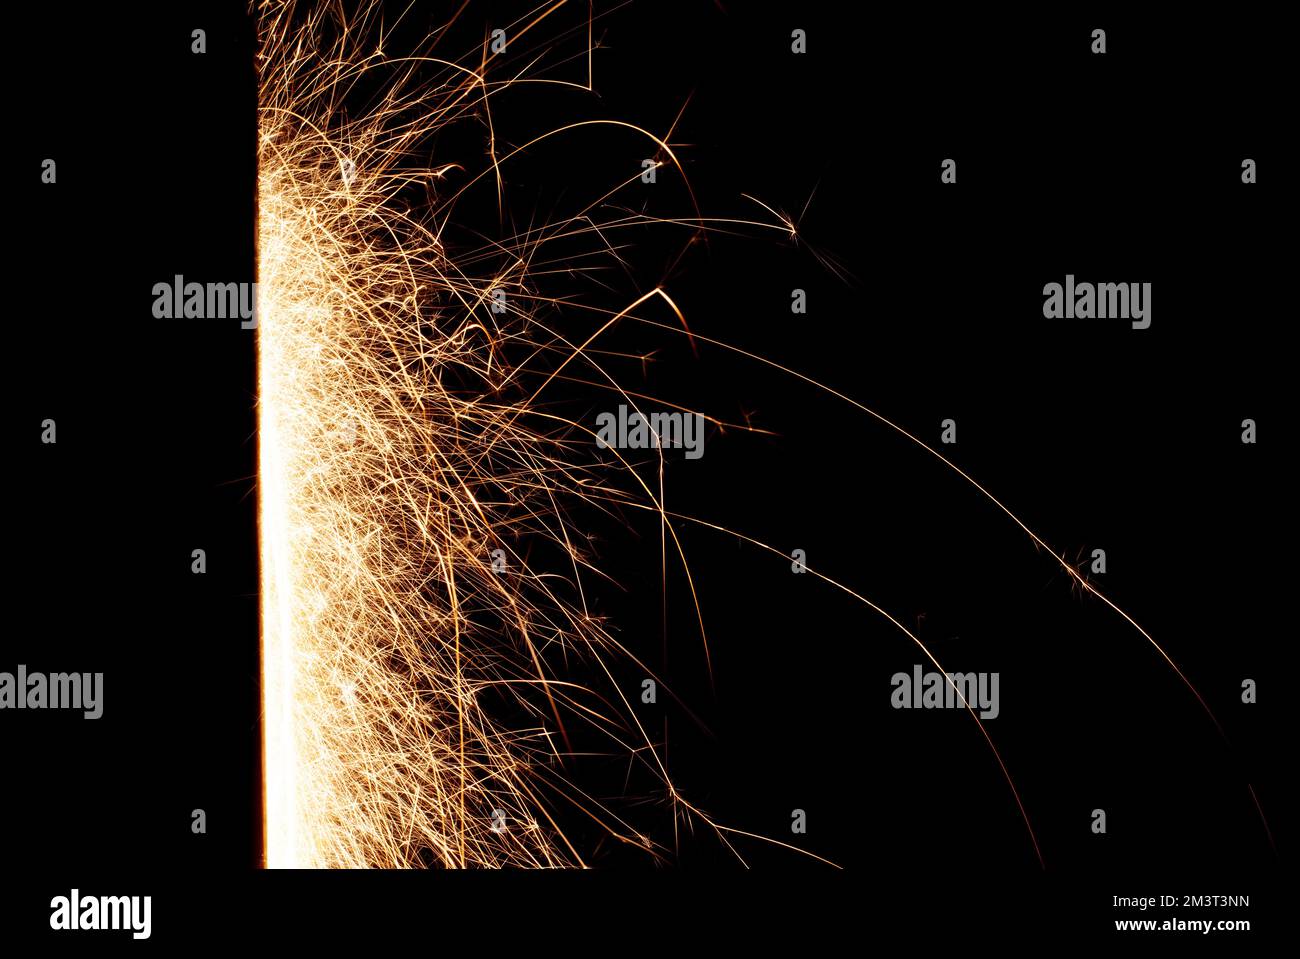 Linien von Funken im Dunkeln. Abstrakter schwarzer Hintergrund mit Feuerwerkfunken bei langer Belichtung der Kamera Stockfoto